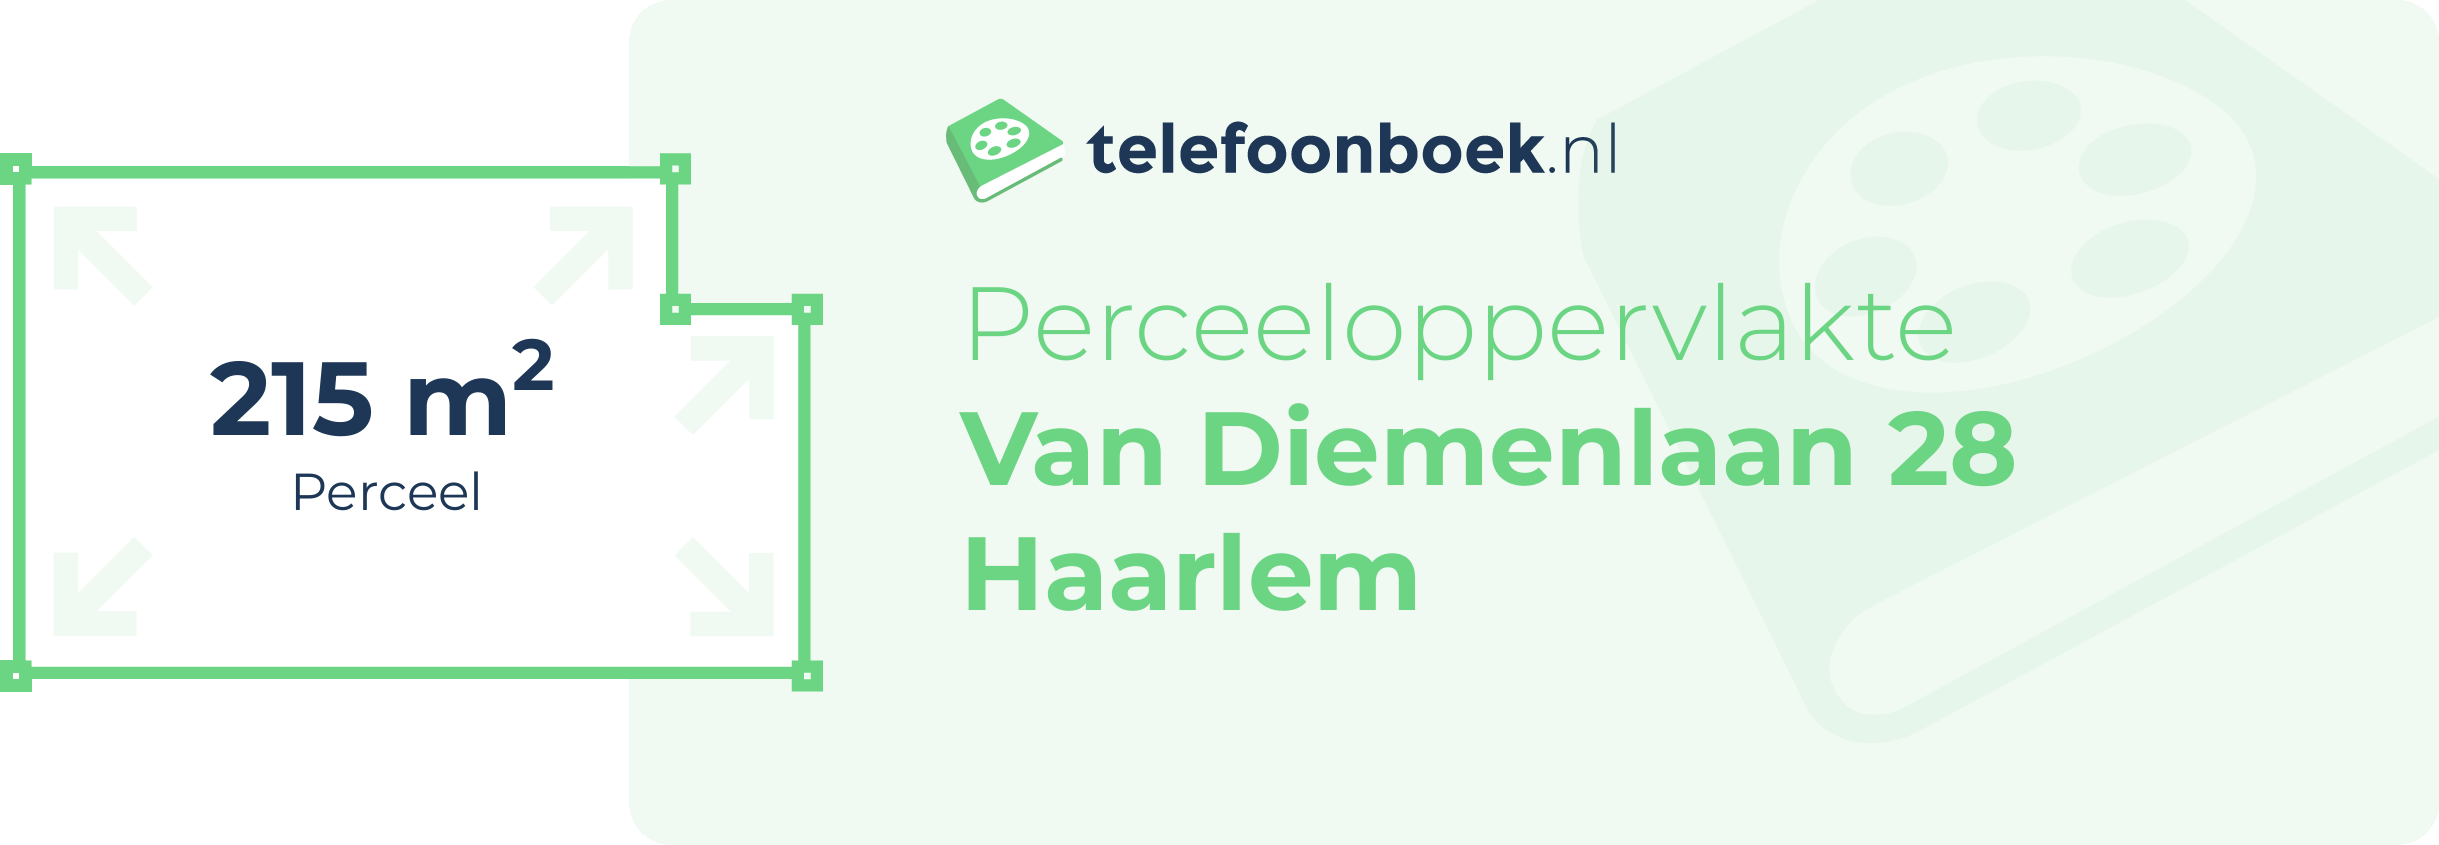 Perceeloppervlakte Van Diemenlaan 28 Haarlem